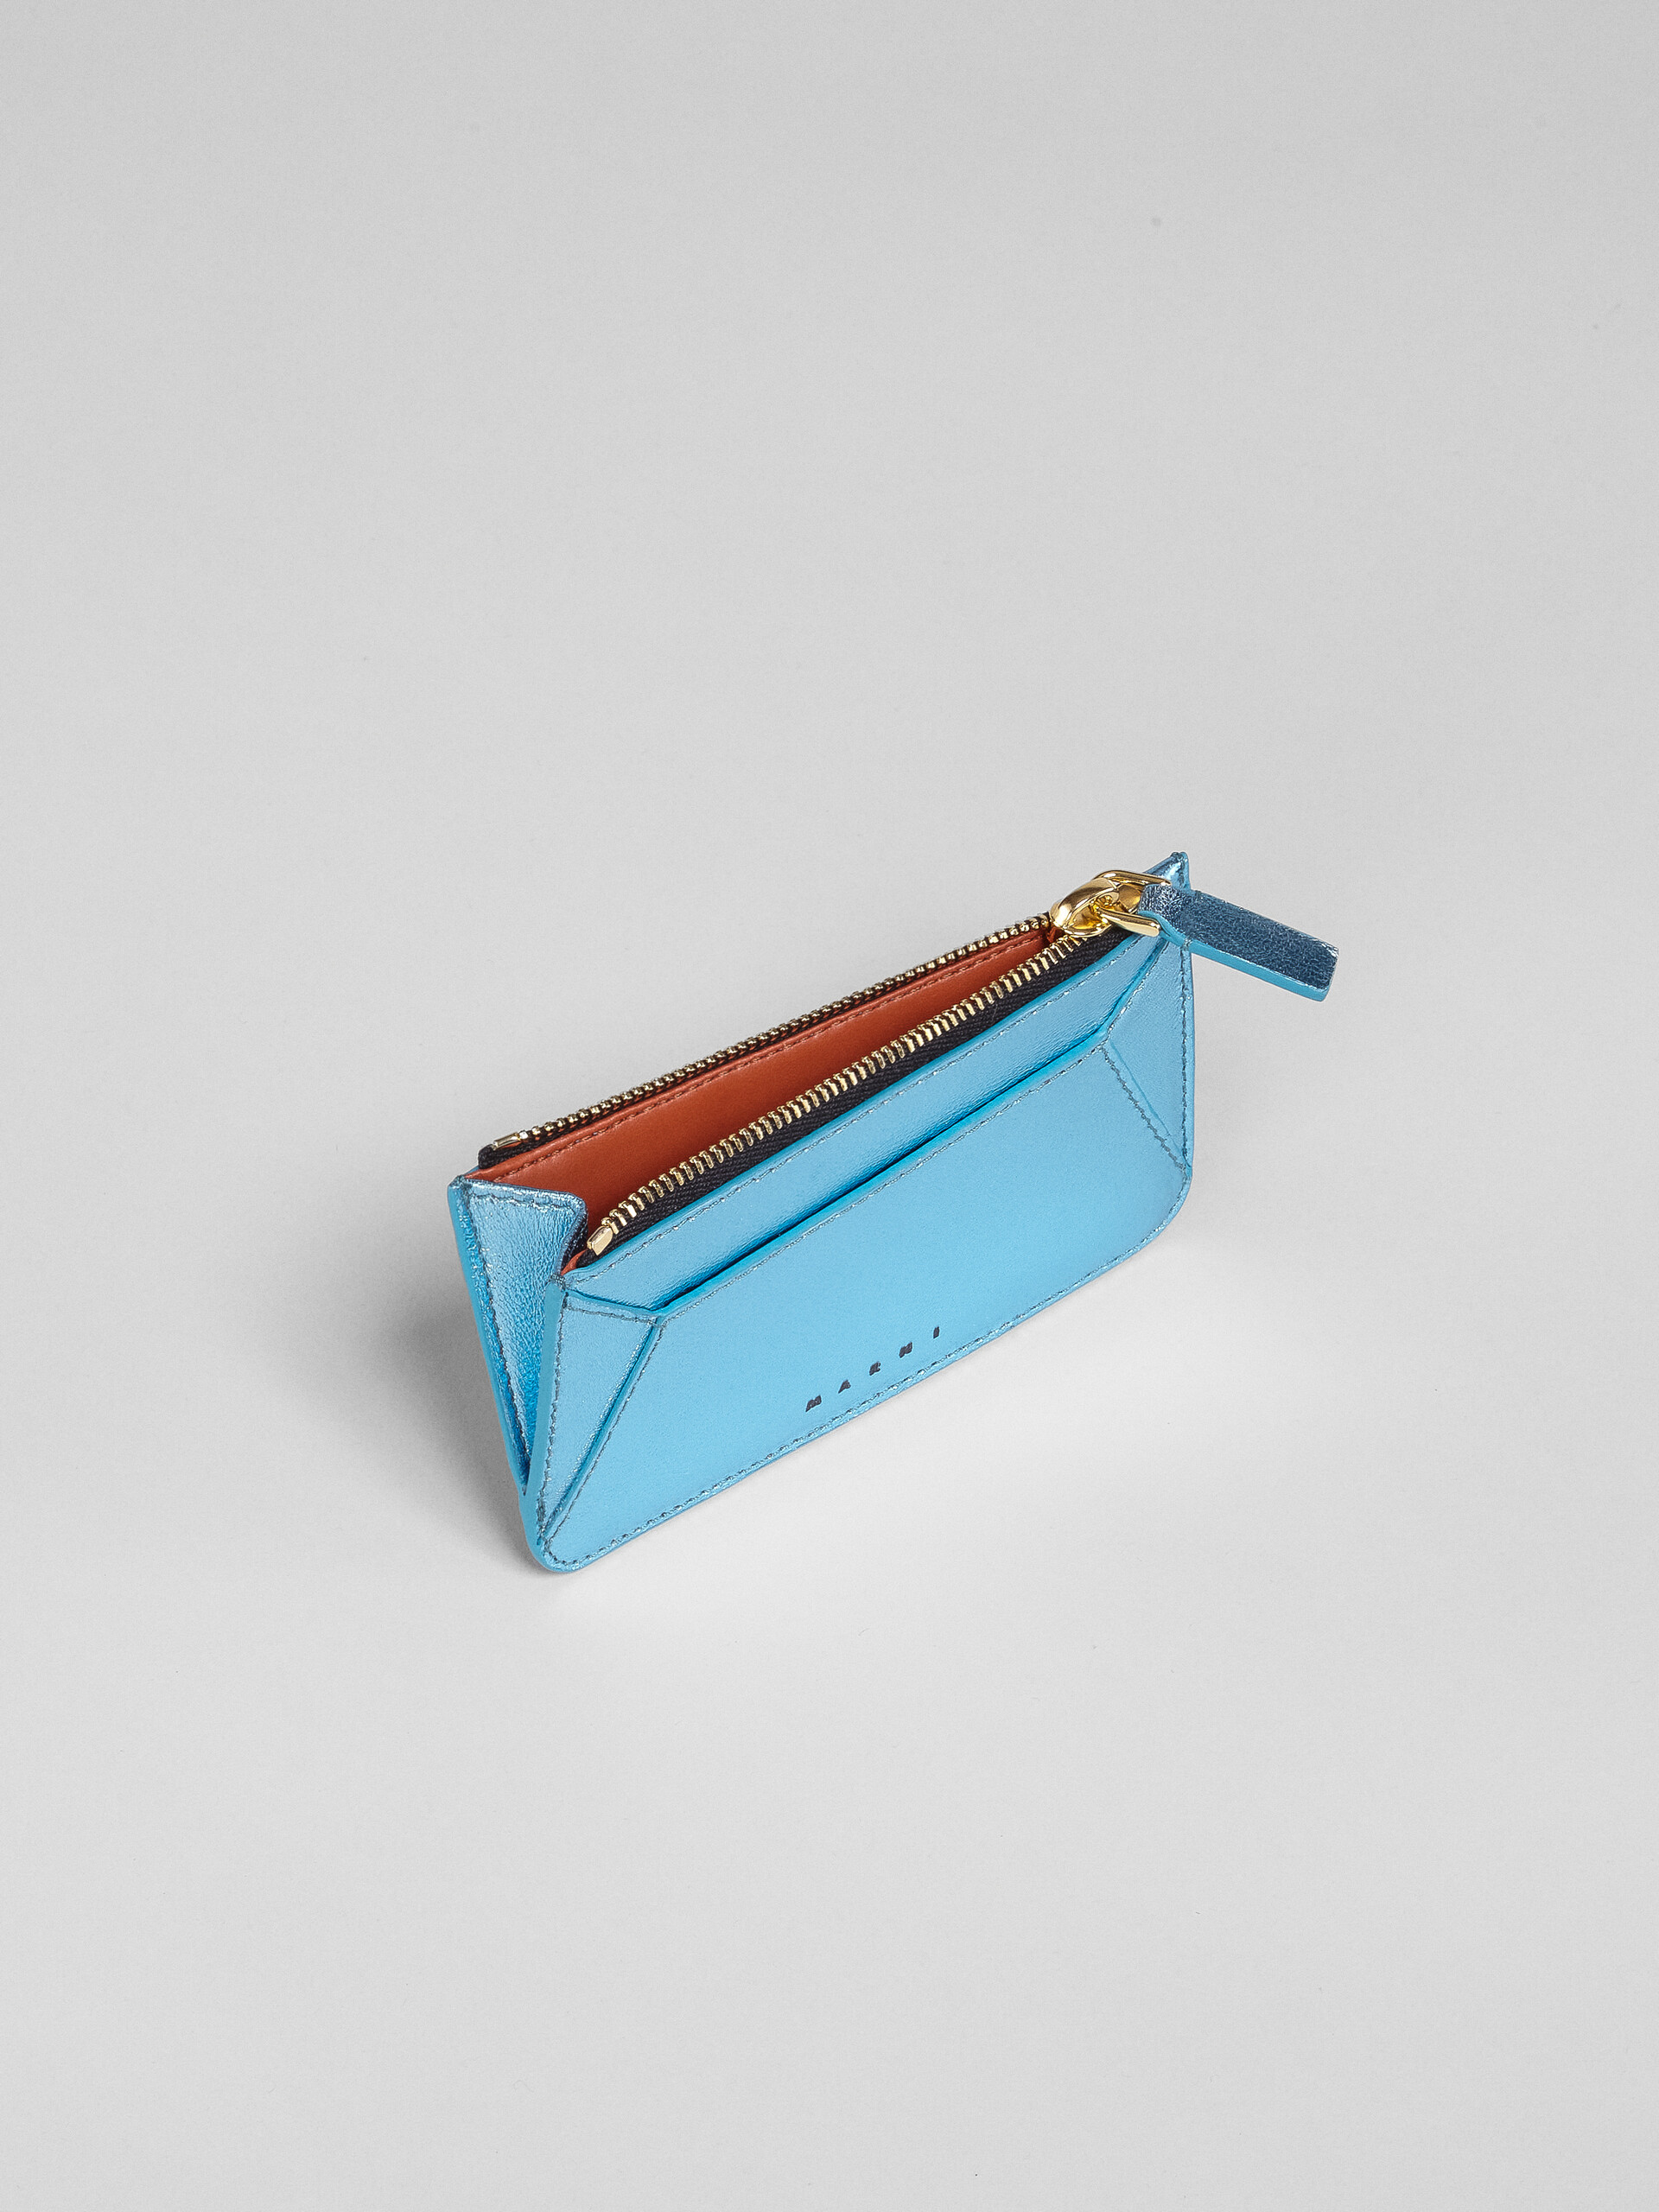 Porte-cartes en cuir nappa bleu pâle métallisé - Portefeuilles - Image 2